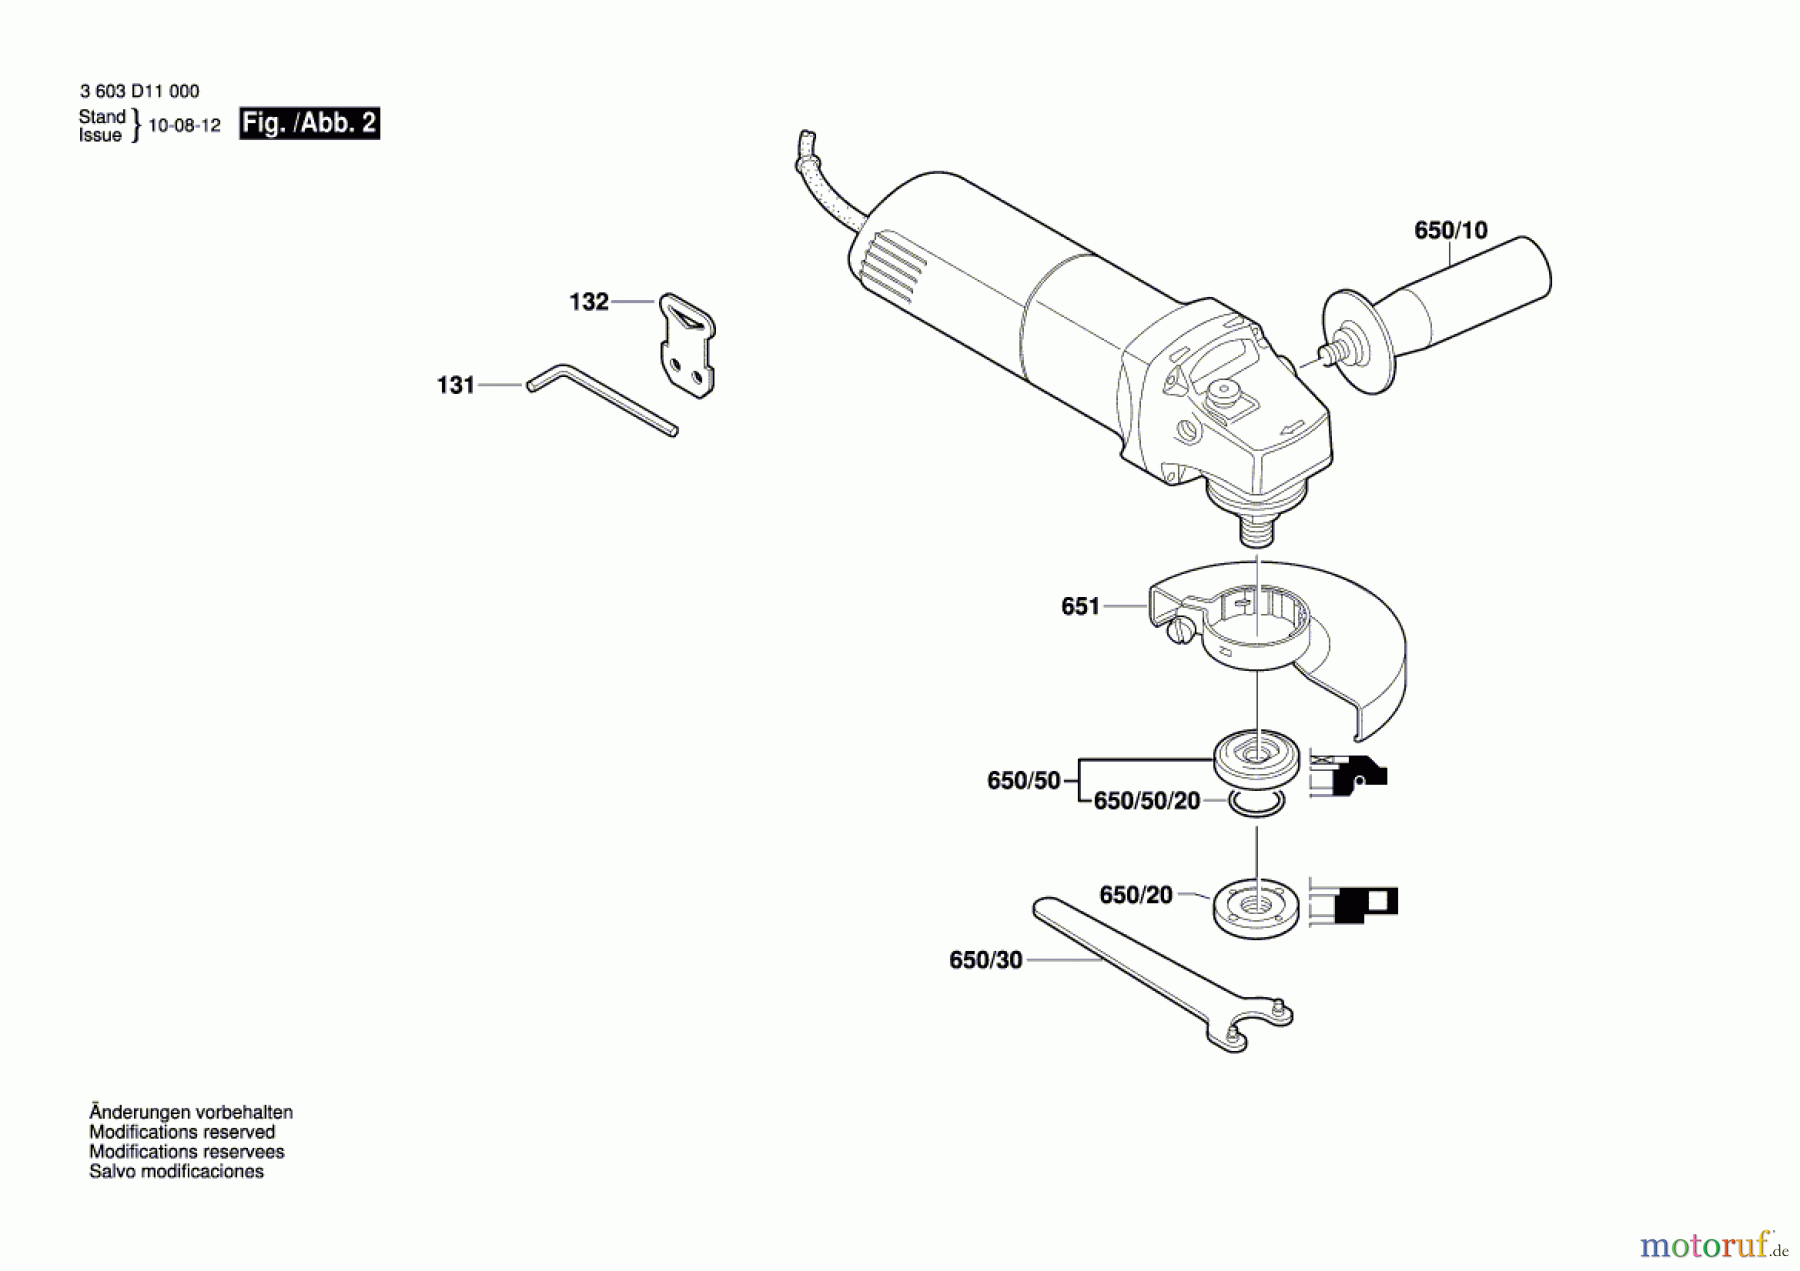  Bosch Werkzeug Winkelschleifer PWS 650 Seite 2